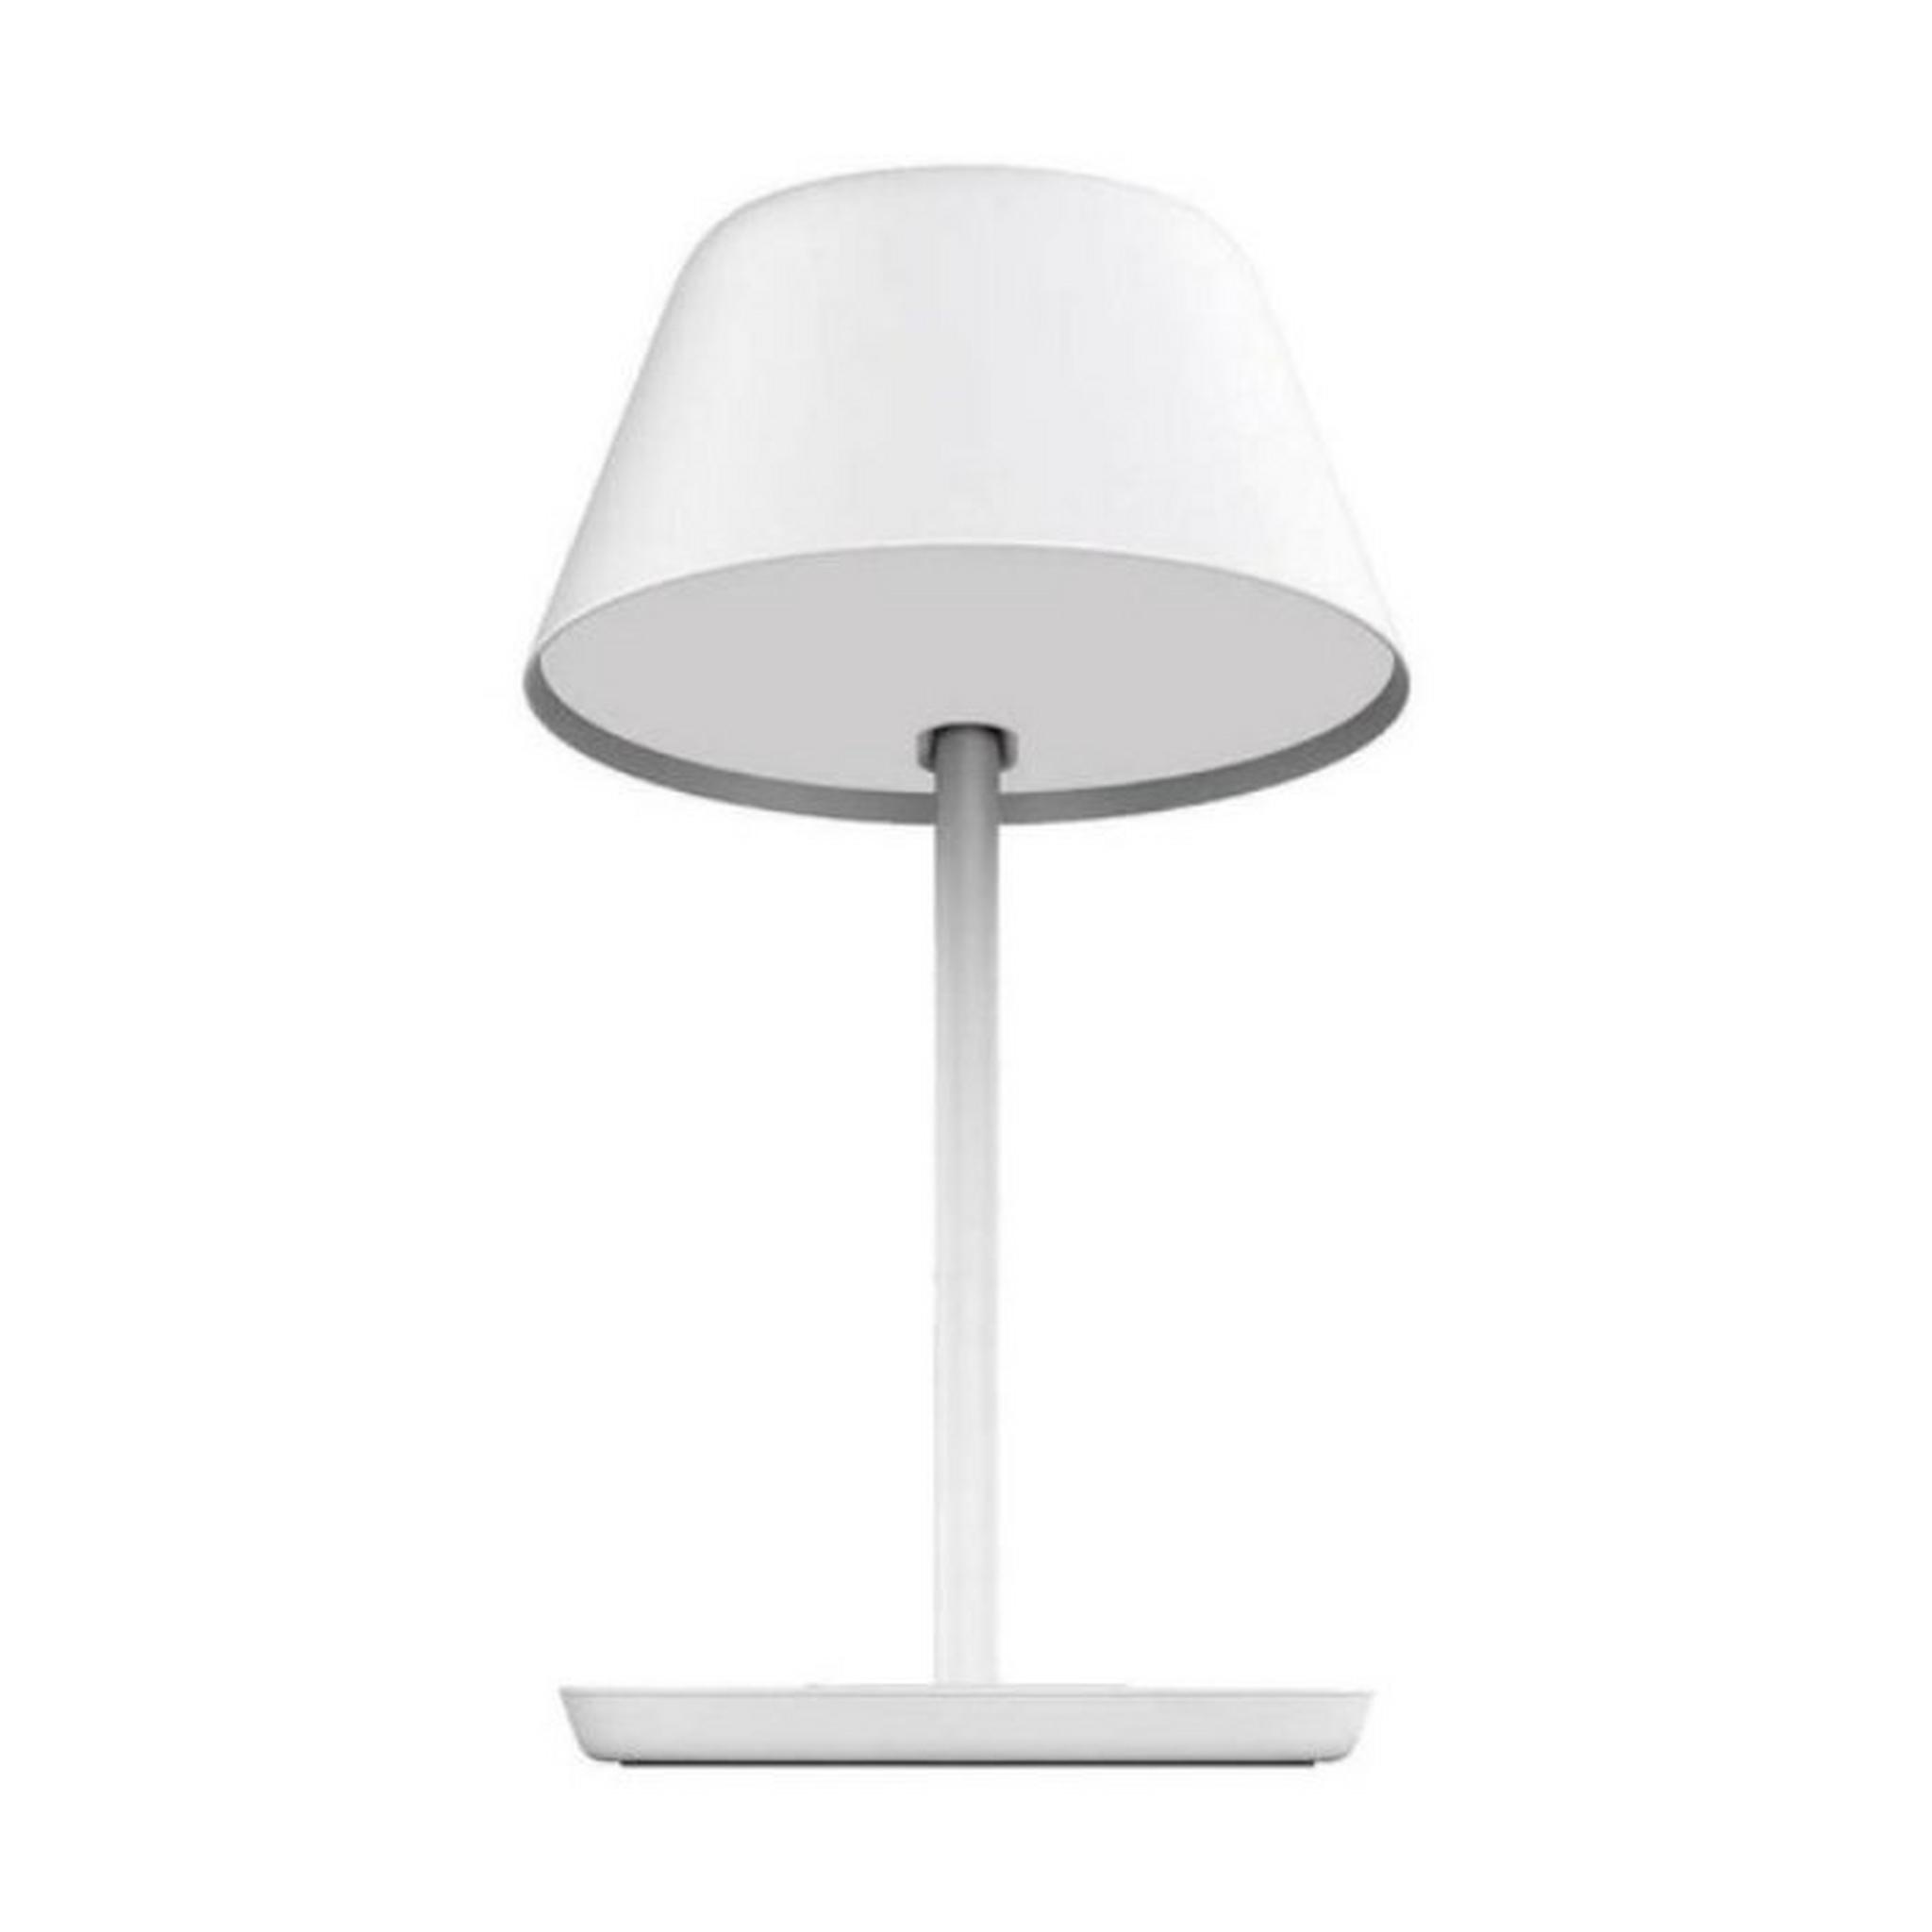 YEELIGHT Star Smart Desk Table Lamp Pro, YLCT03YL – White